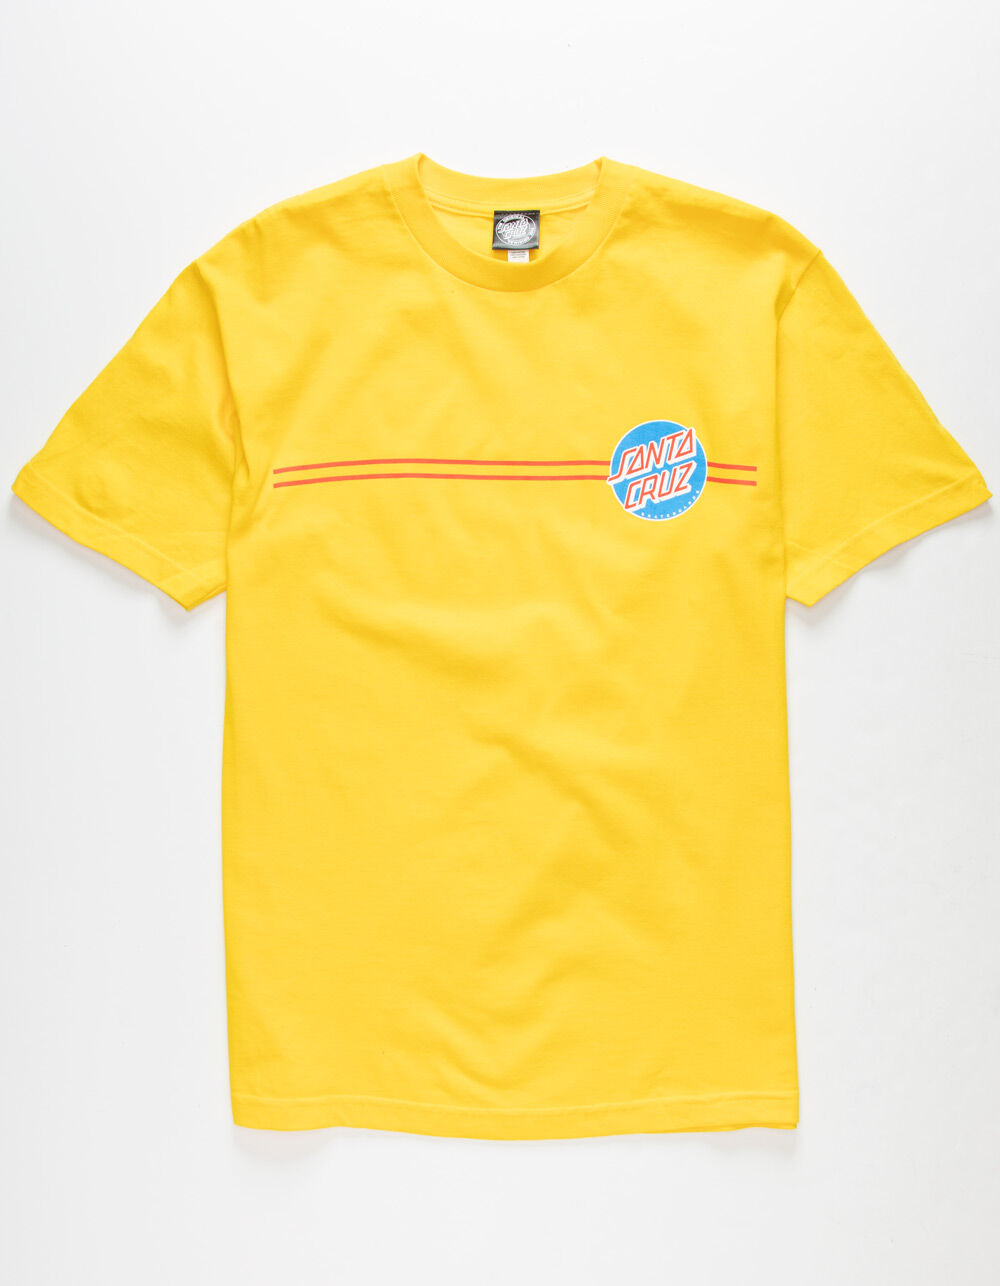 SANTA CRUZ Other Dot Mens Yellow T-Shirt - YELLOW | Tillys